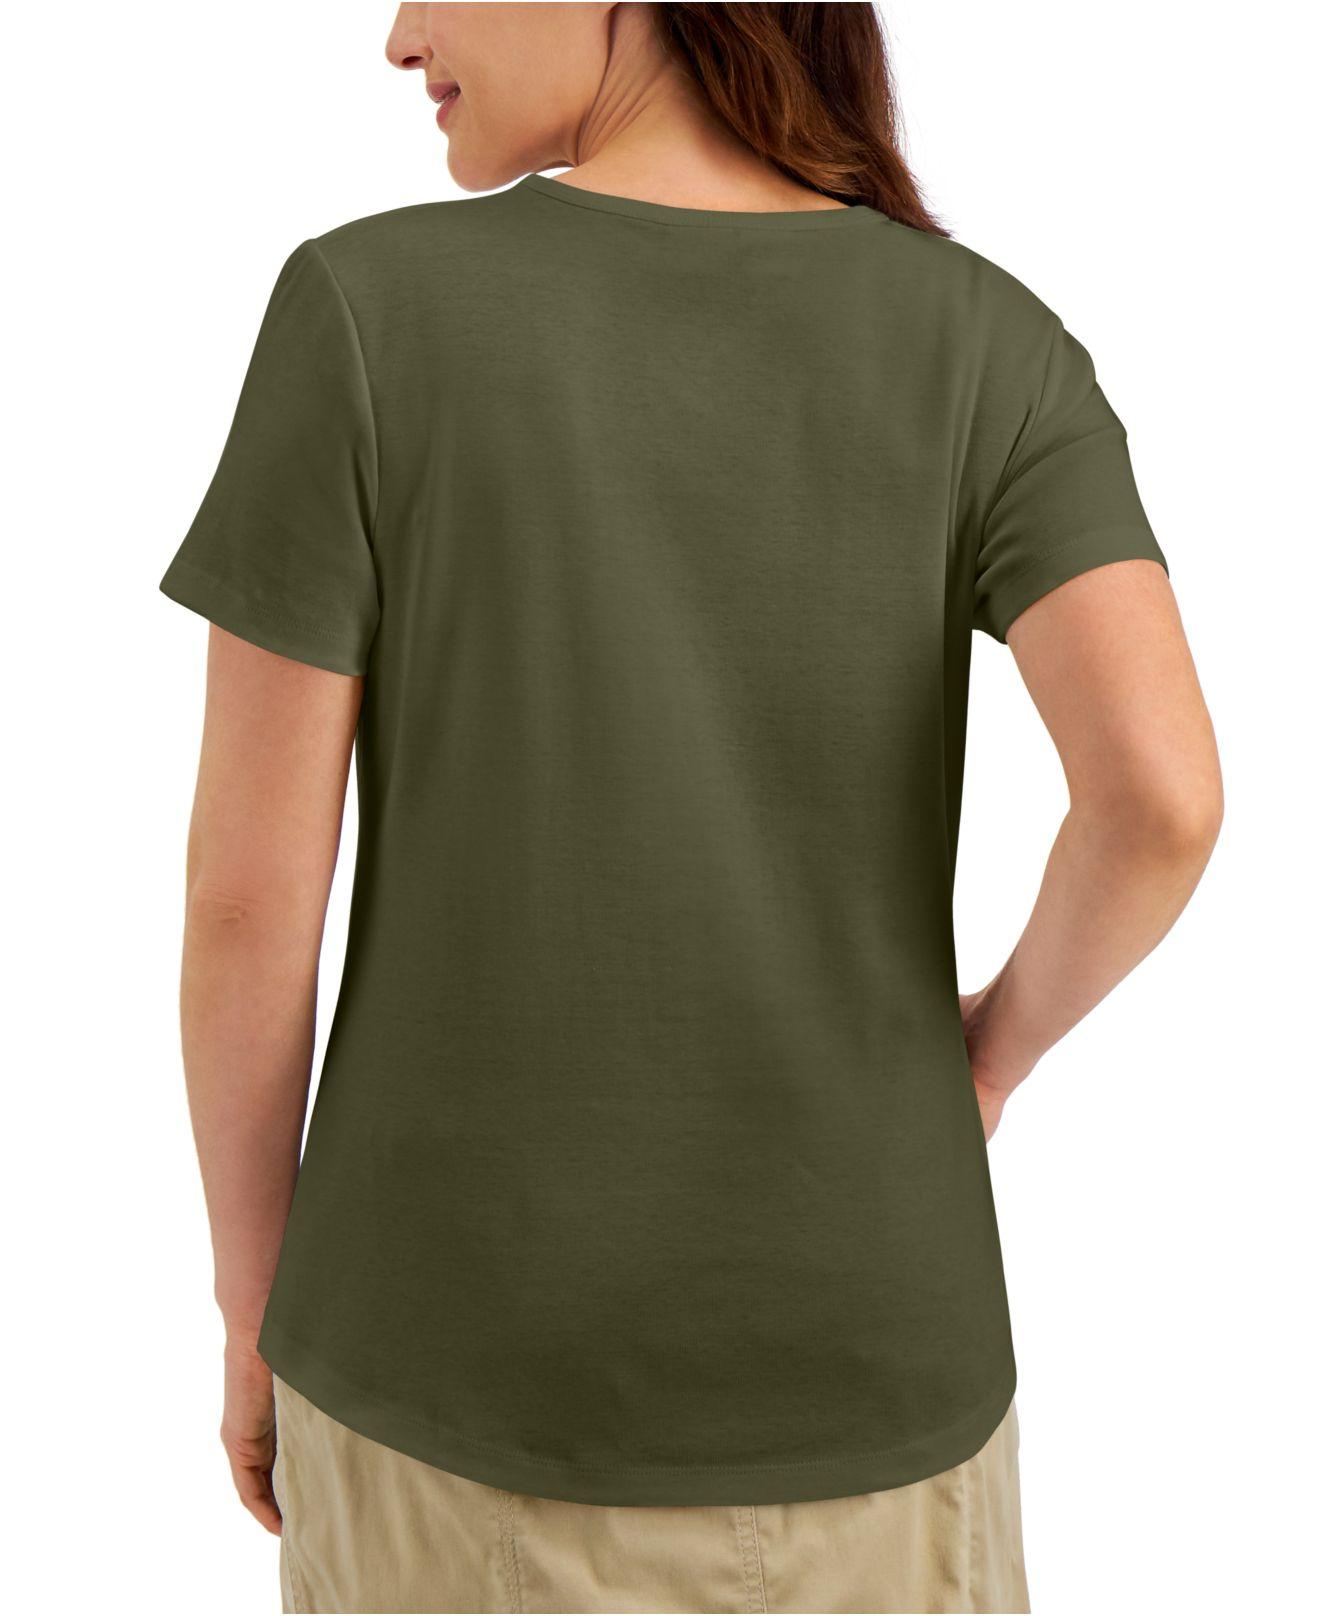 Karen Scott Cotton Short-sleeve Crewneck Top, Created For Macy's in Green